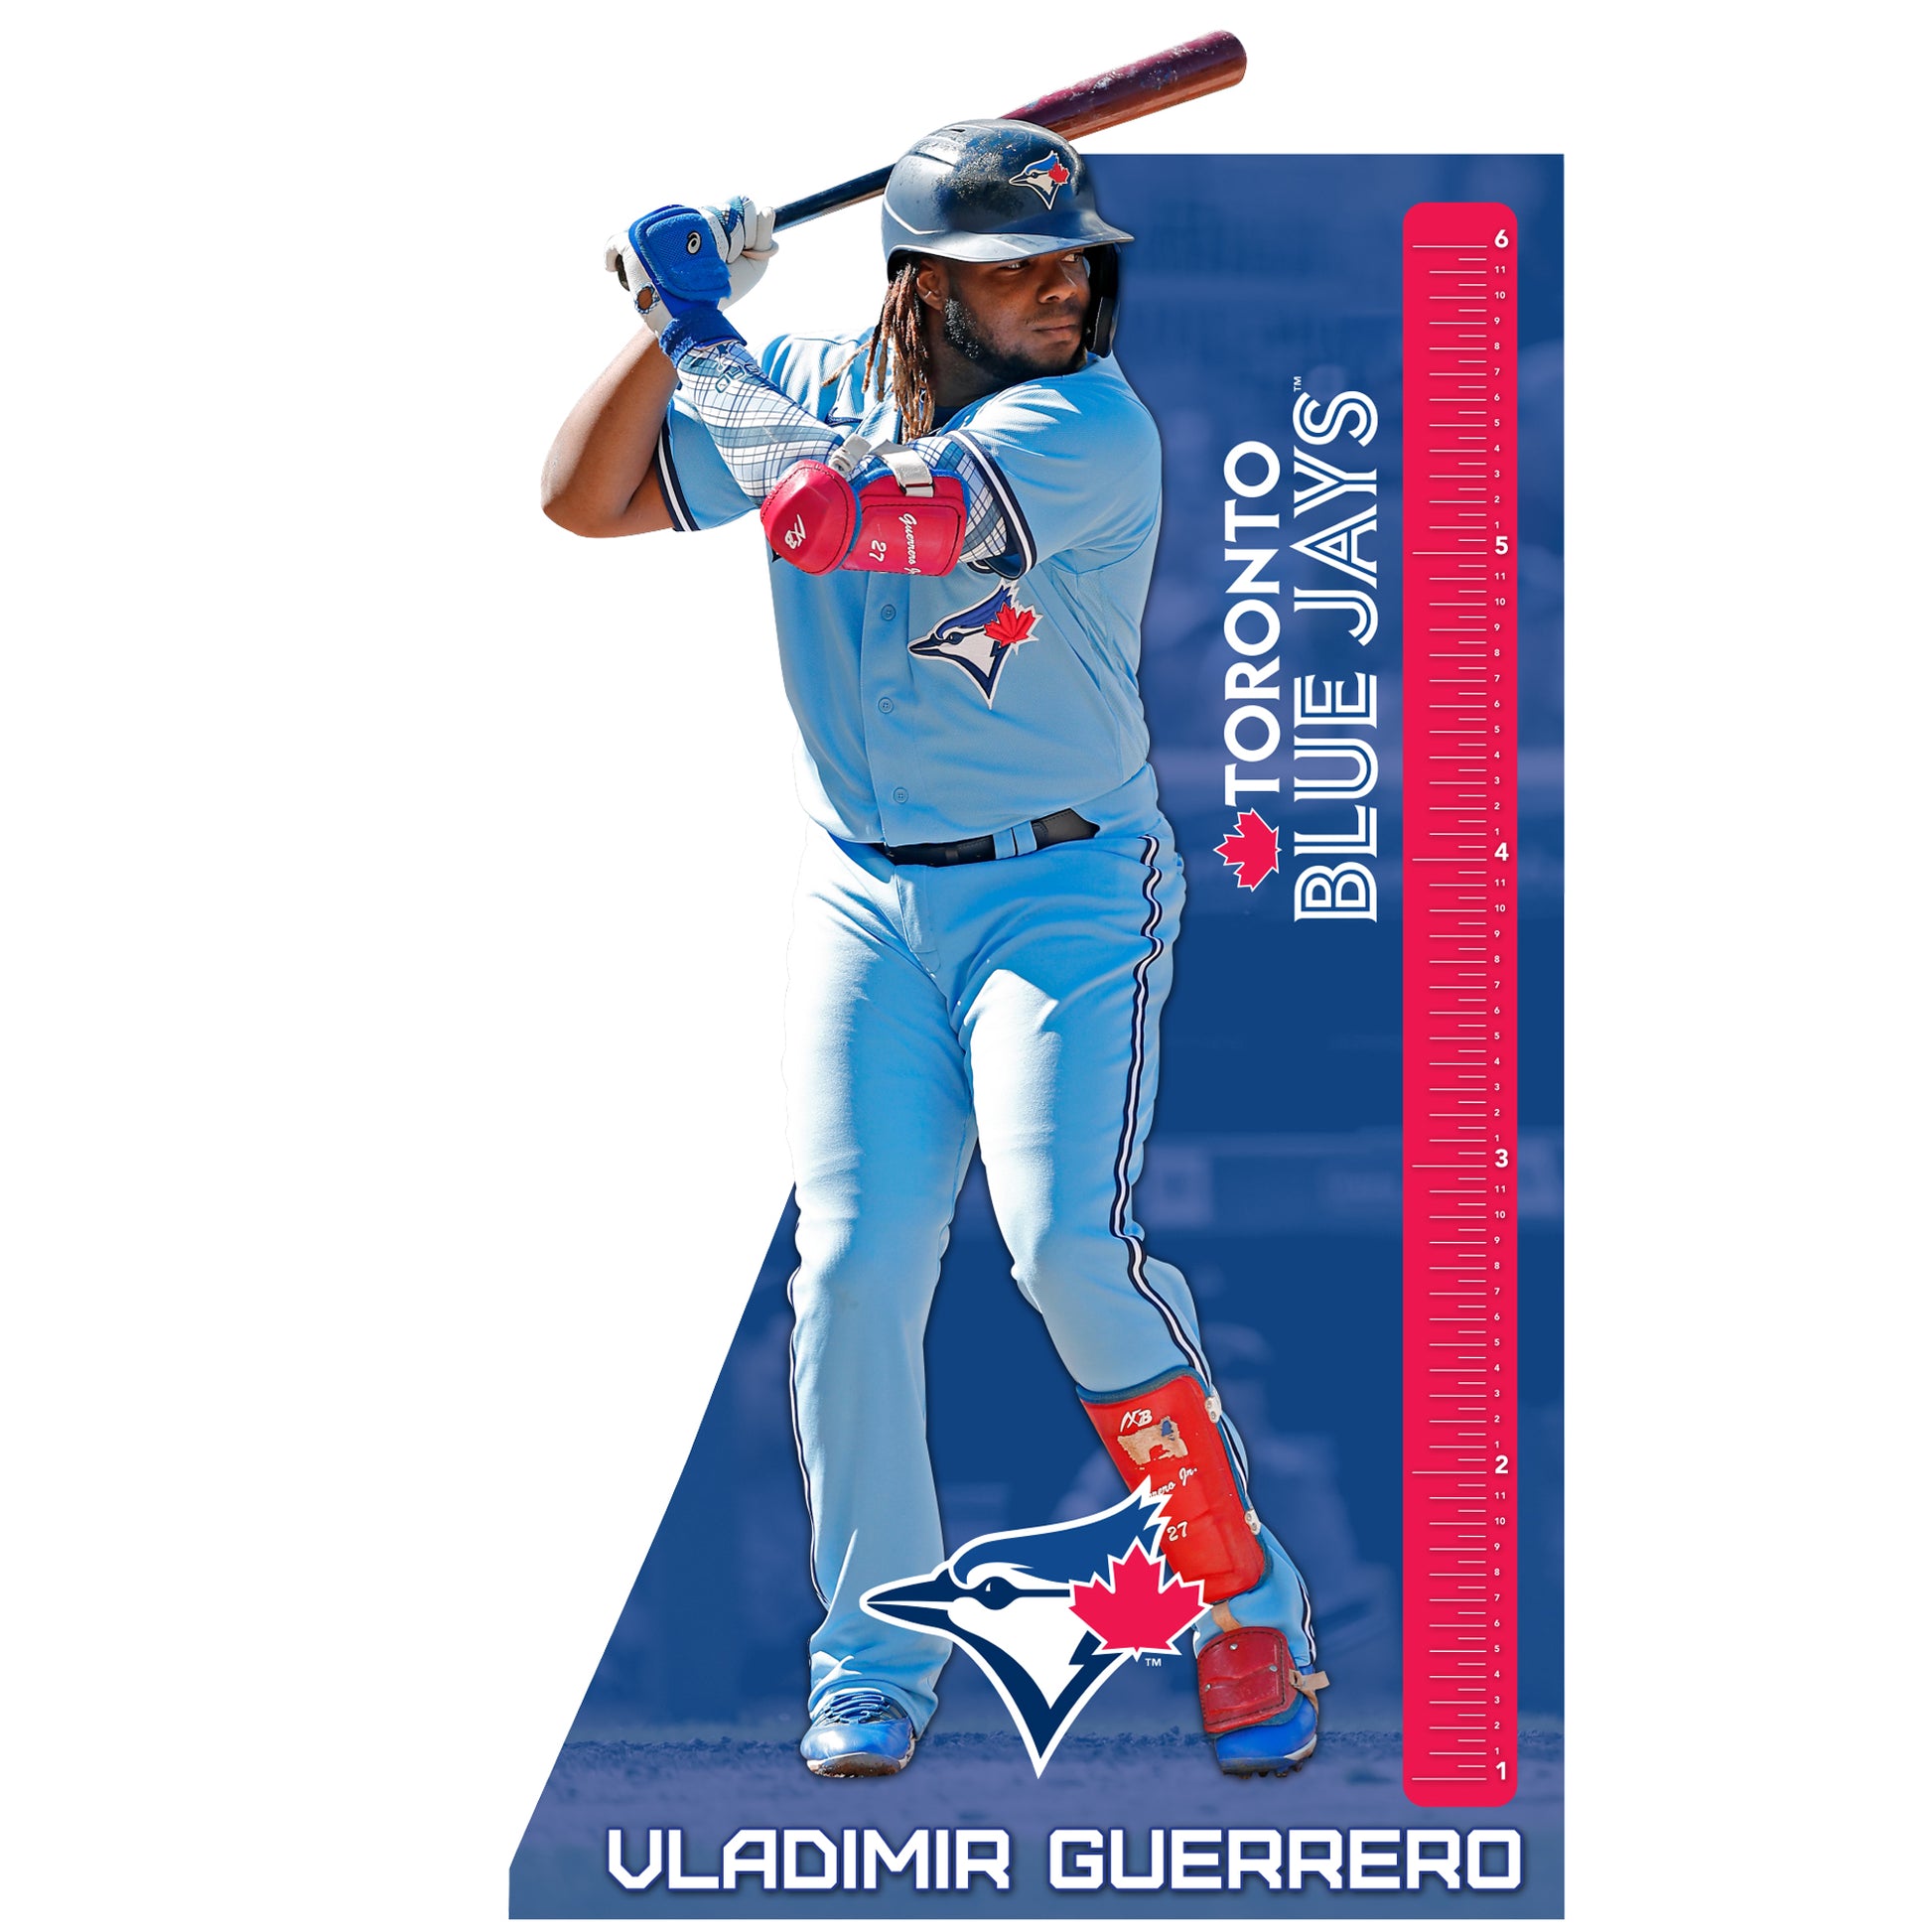 Vladimir Guerrero Jr Toronto Blue Jays Baseball Poster Man 